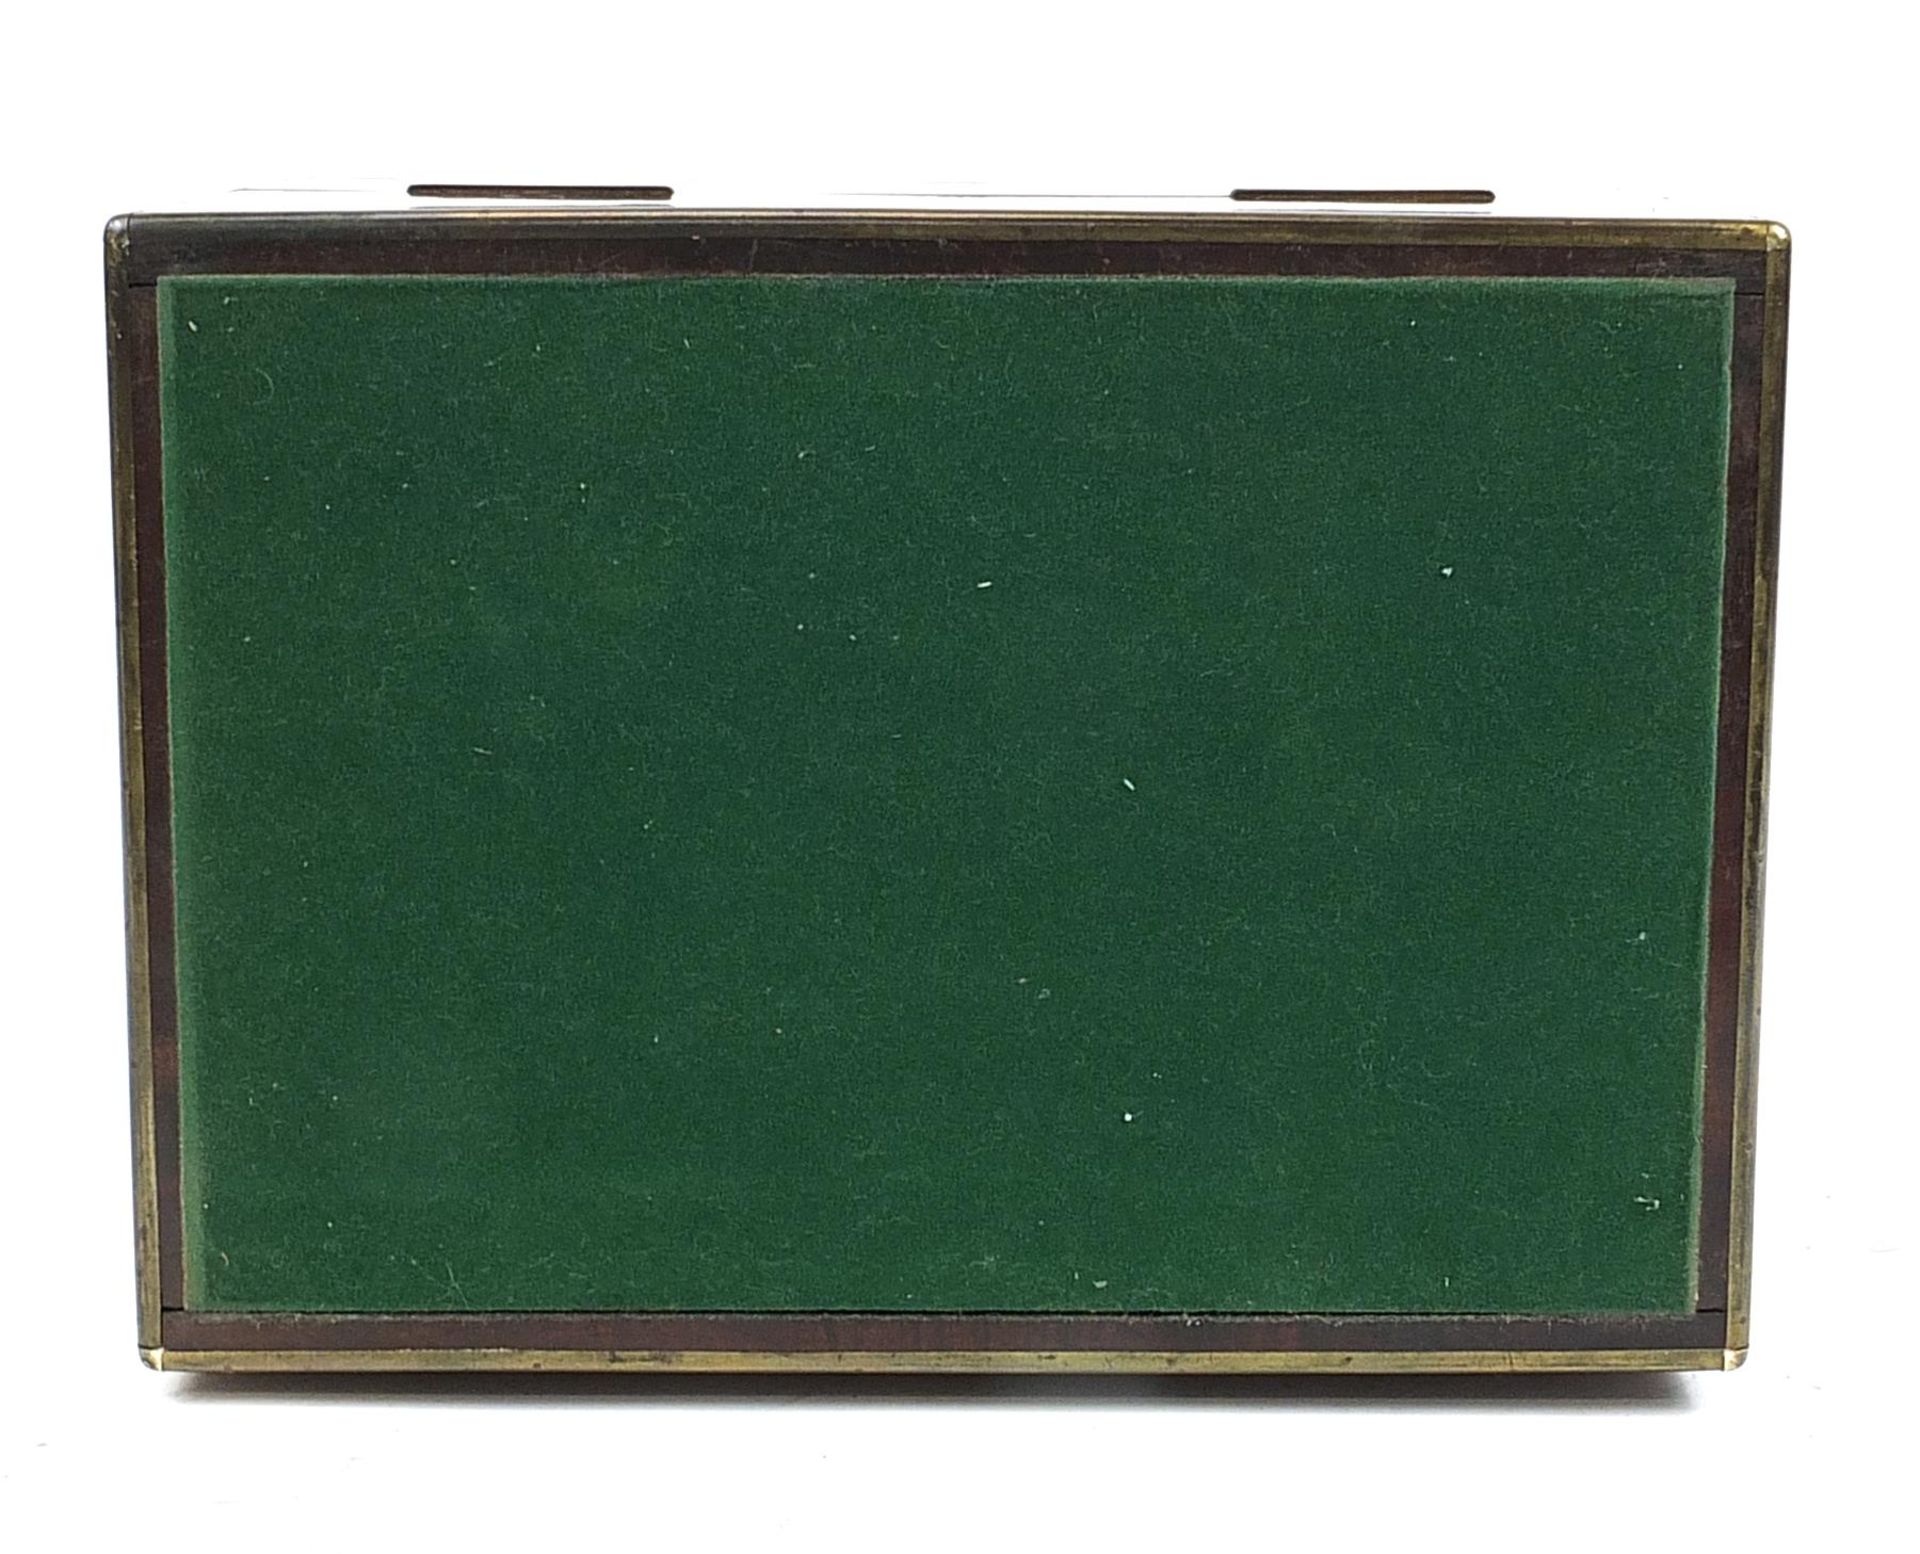 Victorian mahogany box with Brahma lock converted to a humidor, 21cm H x 35.5cm W x 25cm D - Bild 5 aus 5